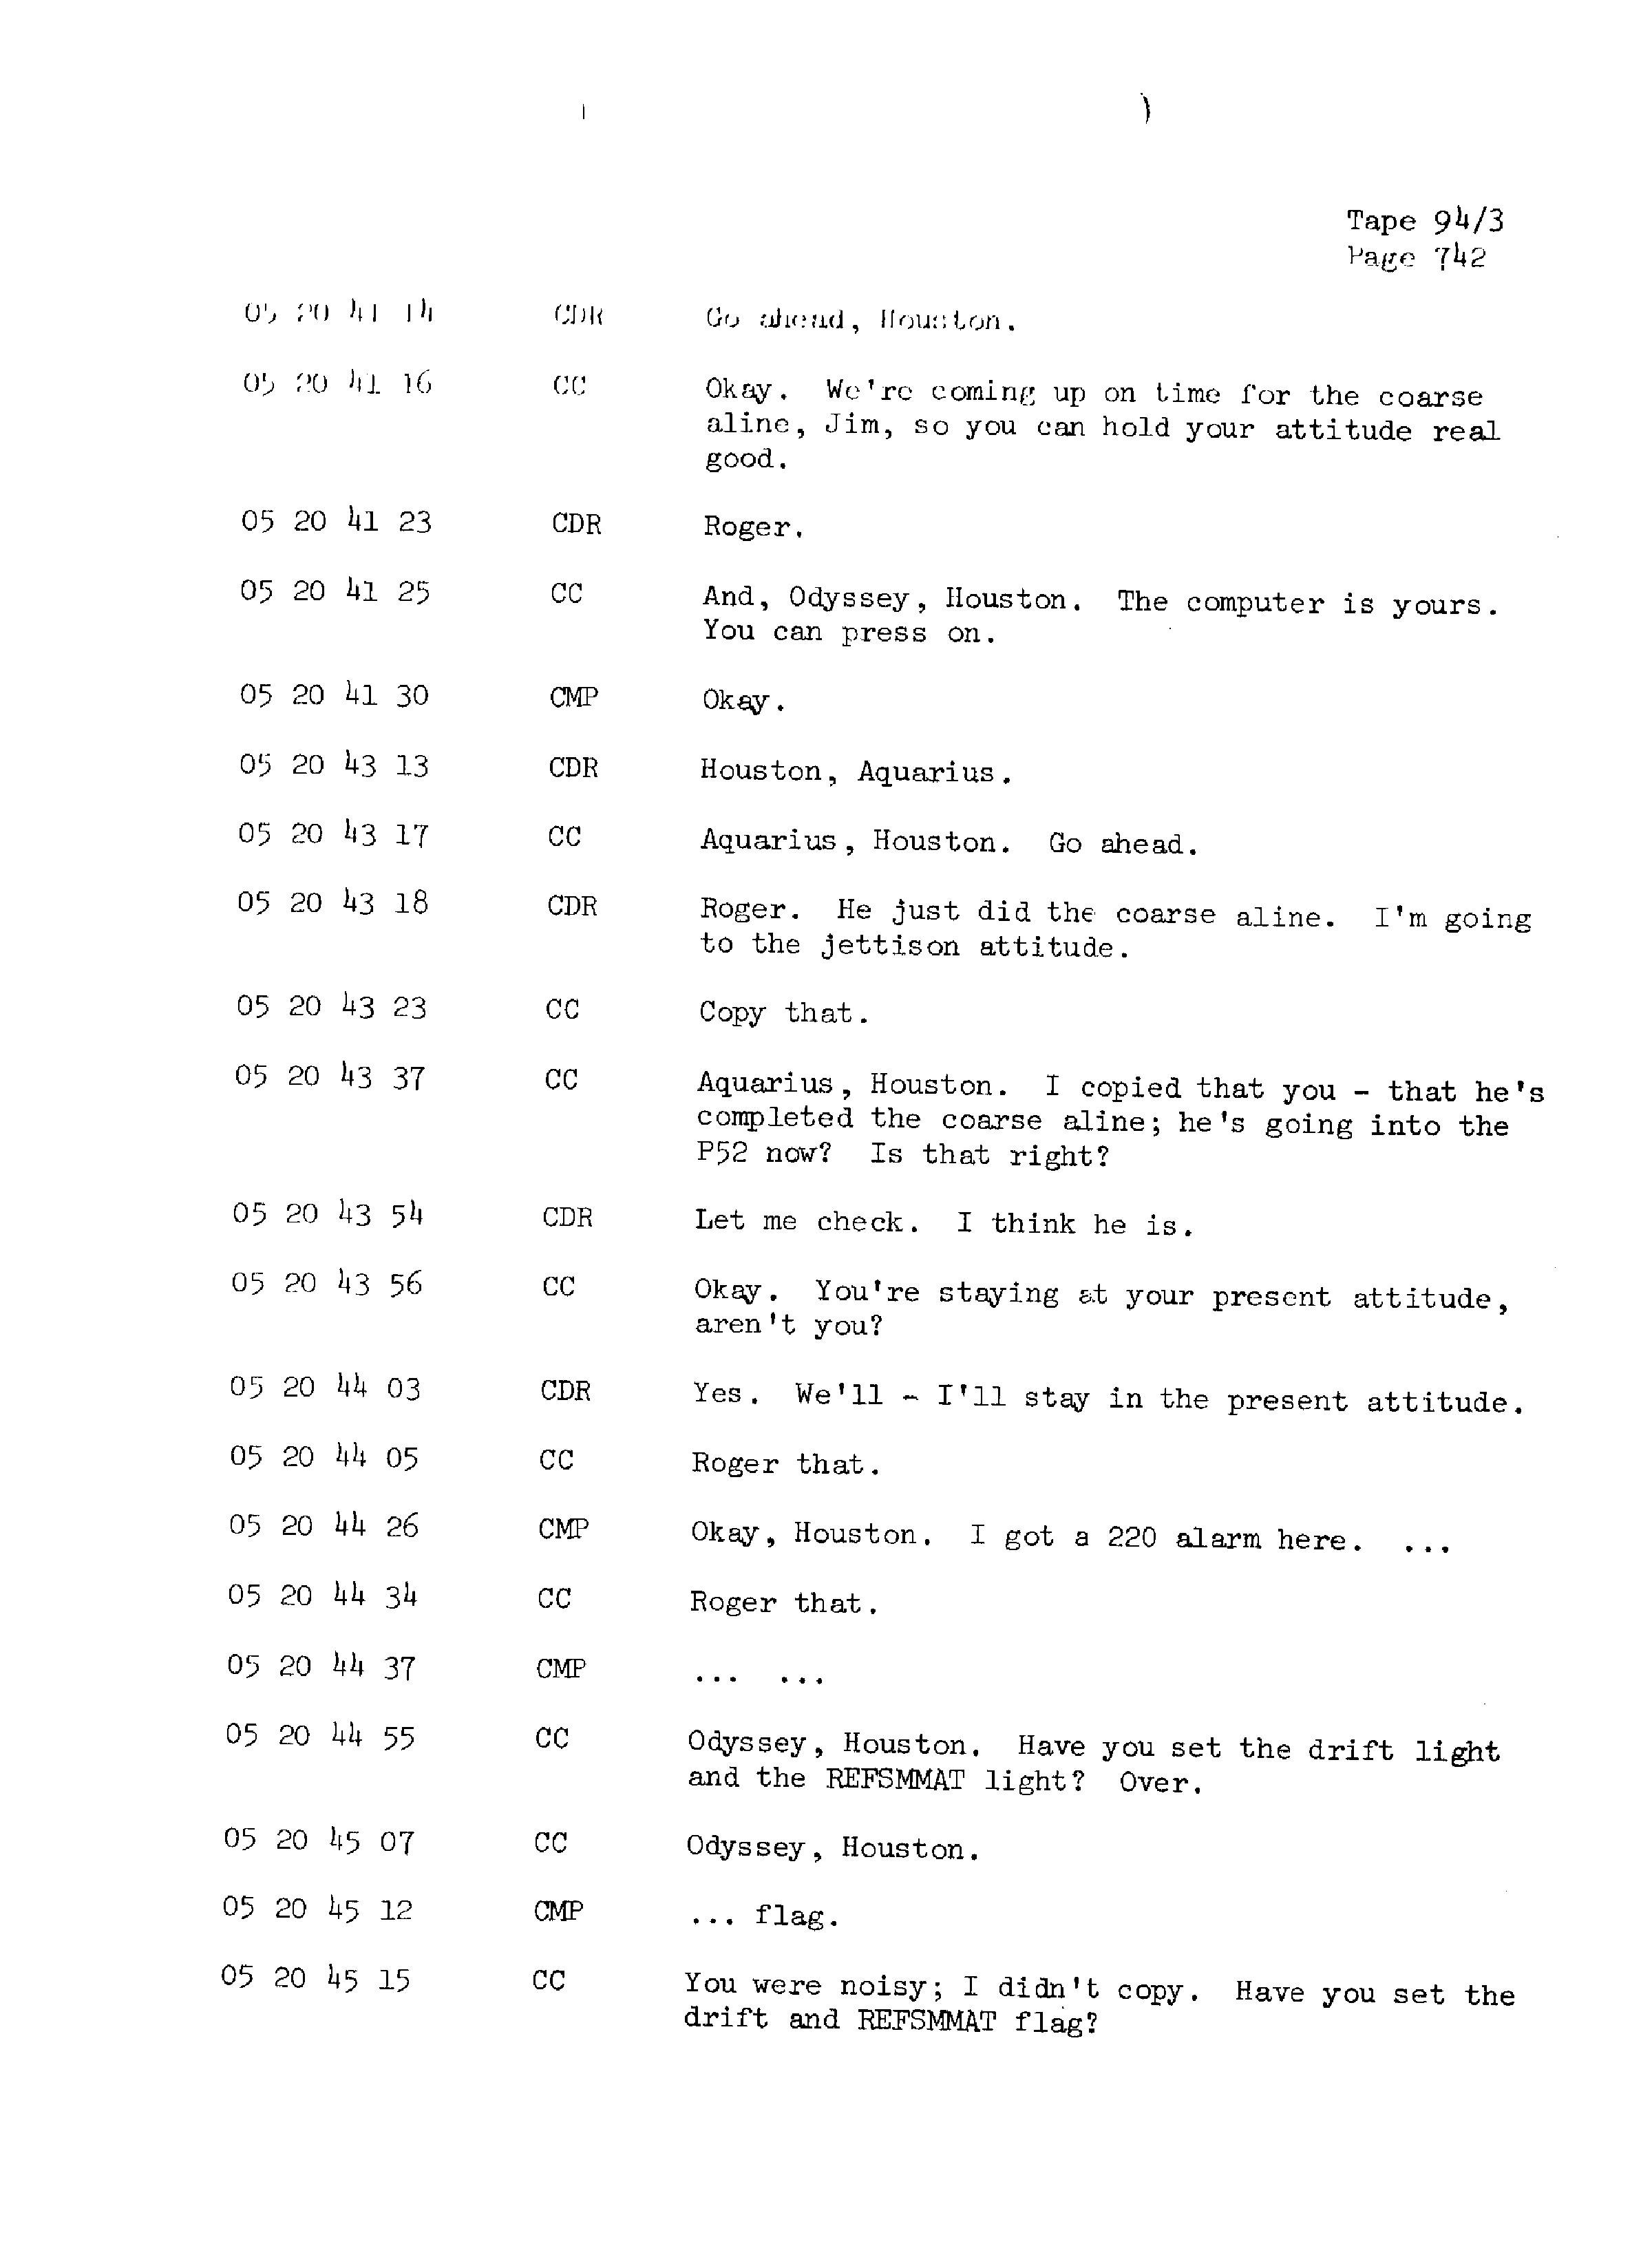 Page 749 of Apollo 13’s original transcript